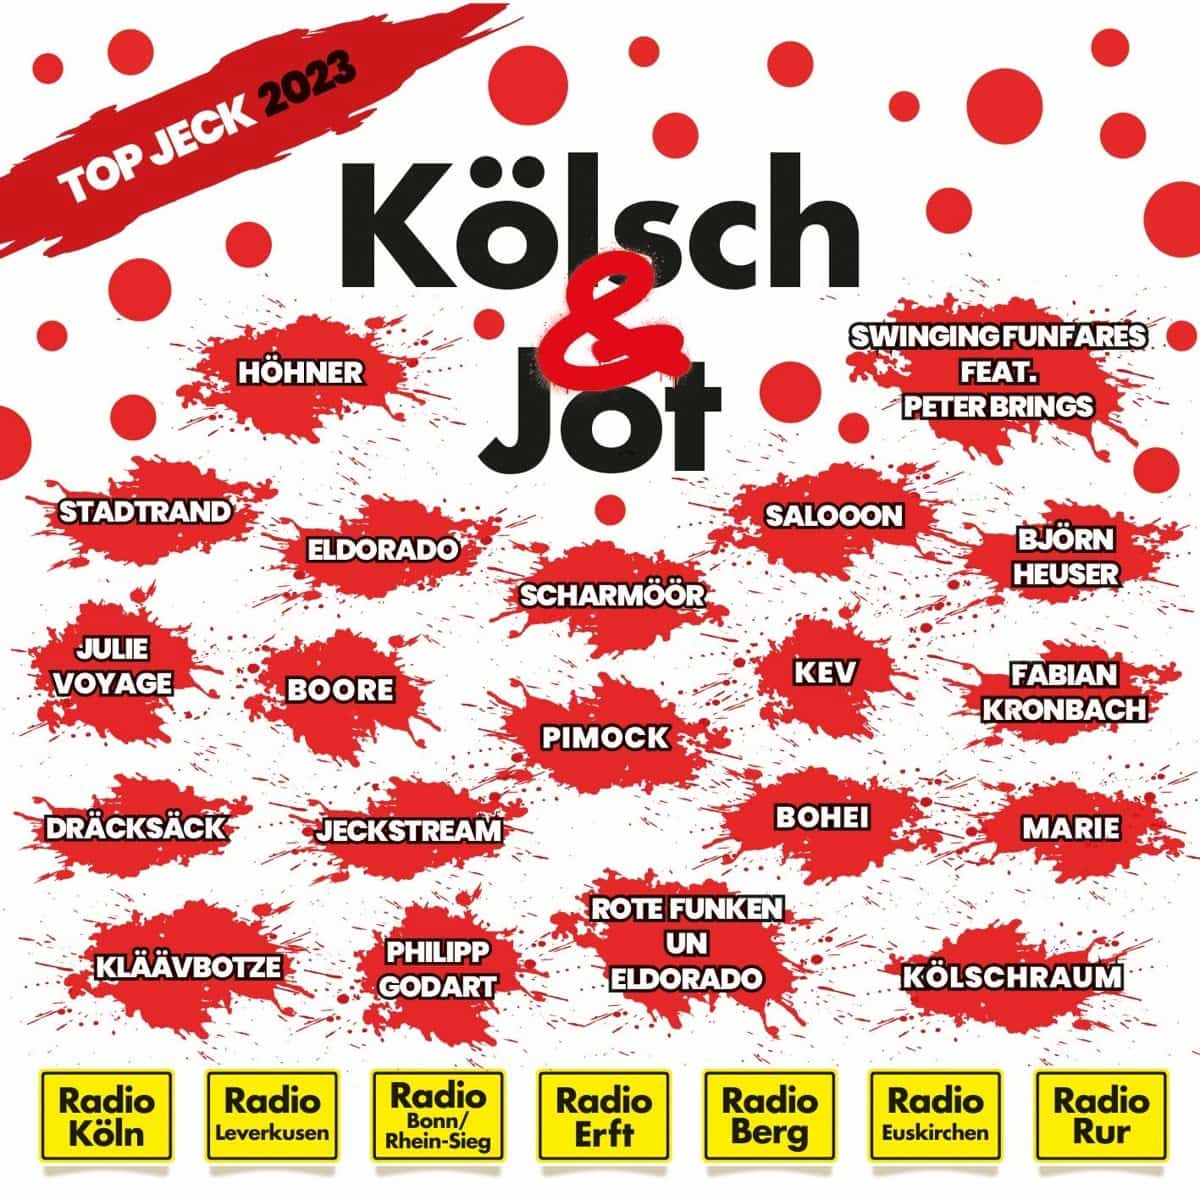 Album “Koelsch & Jot-Top Jeck 2023” von einigen Radiostationen